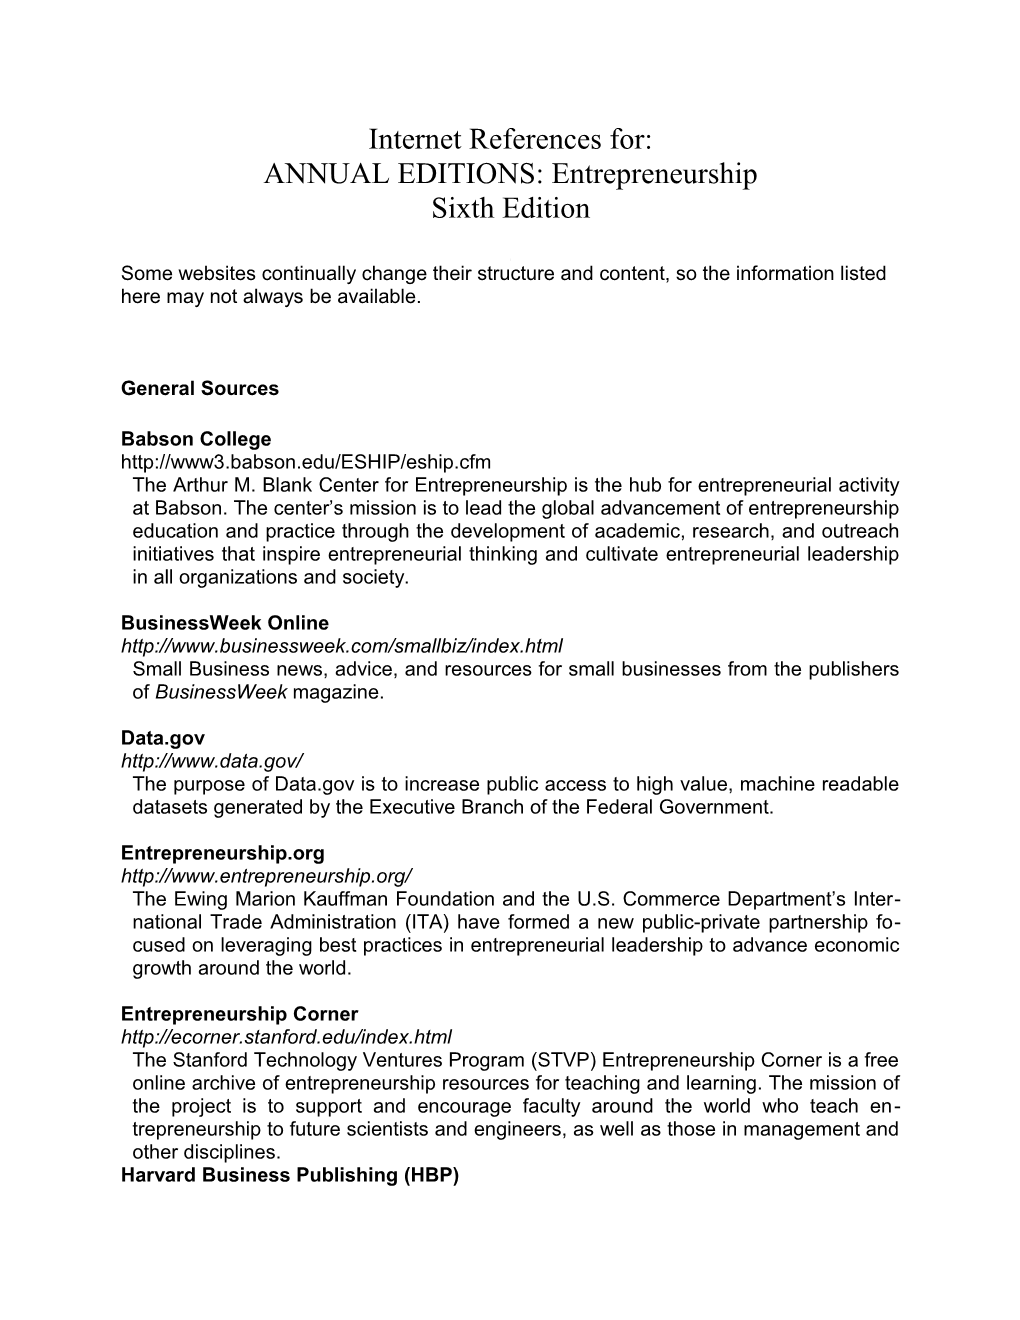 Annual Editions: Entrepreneurship 6/E